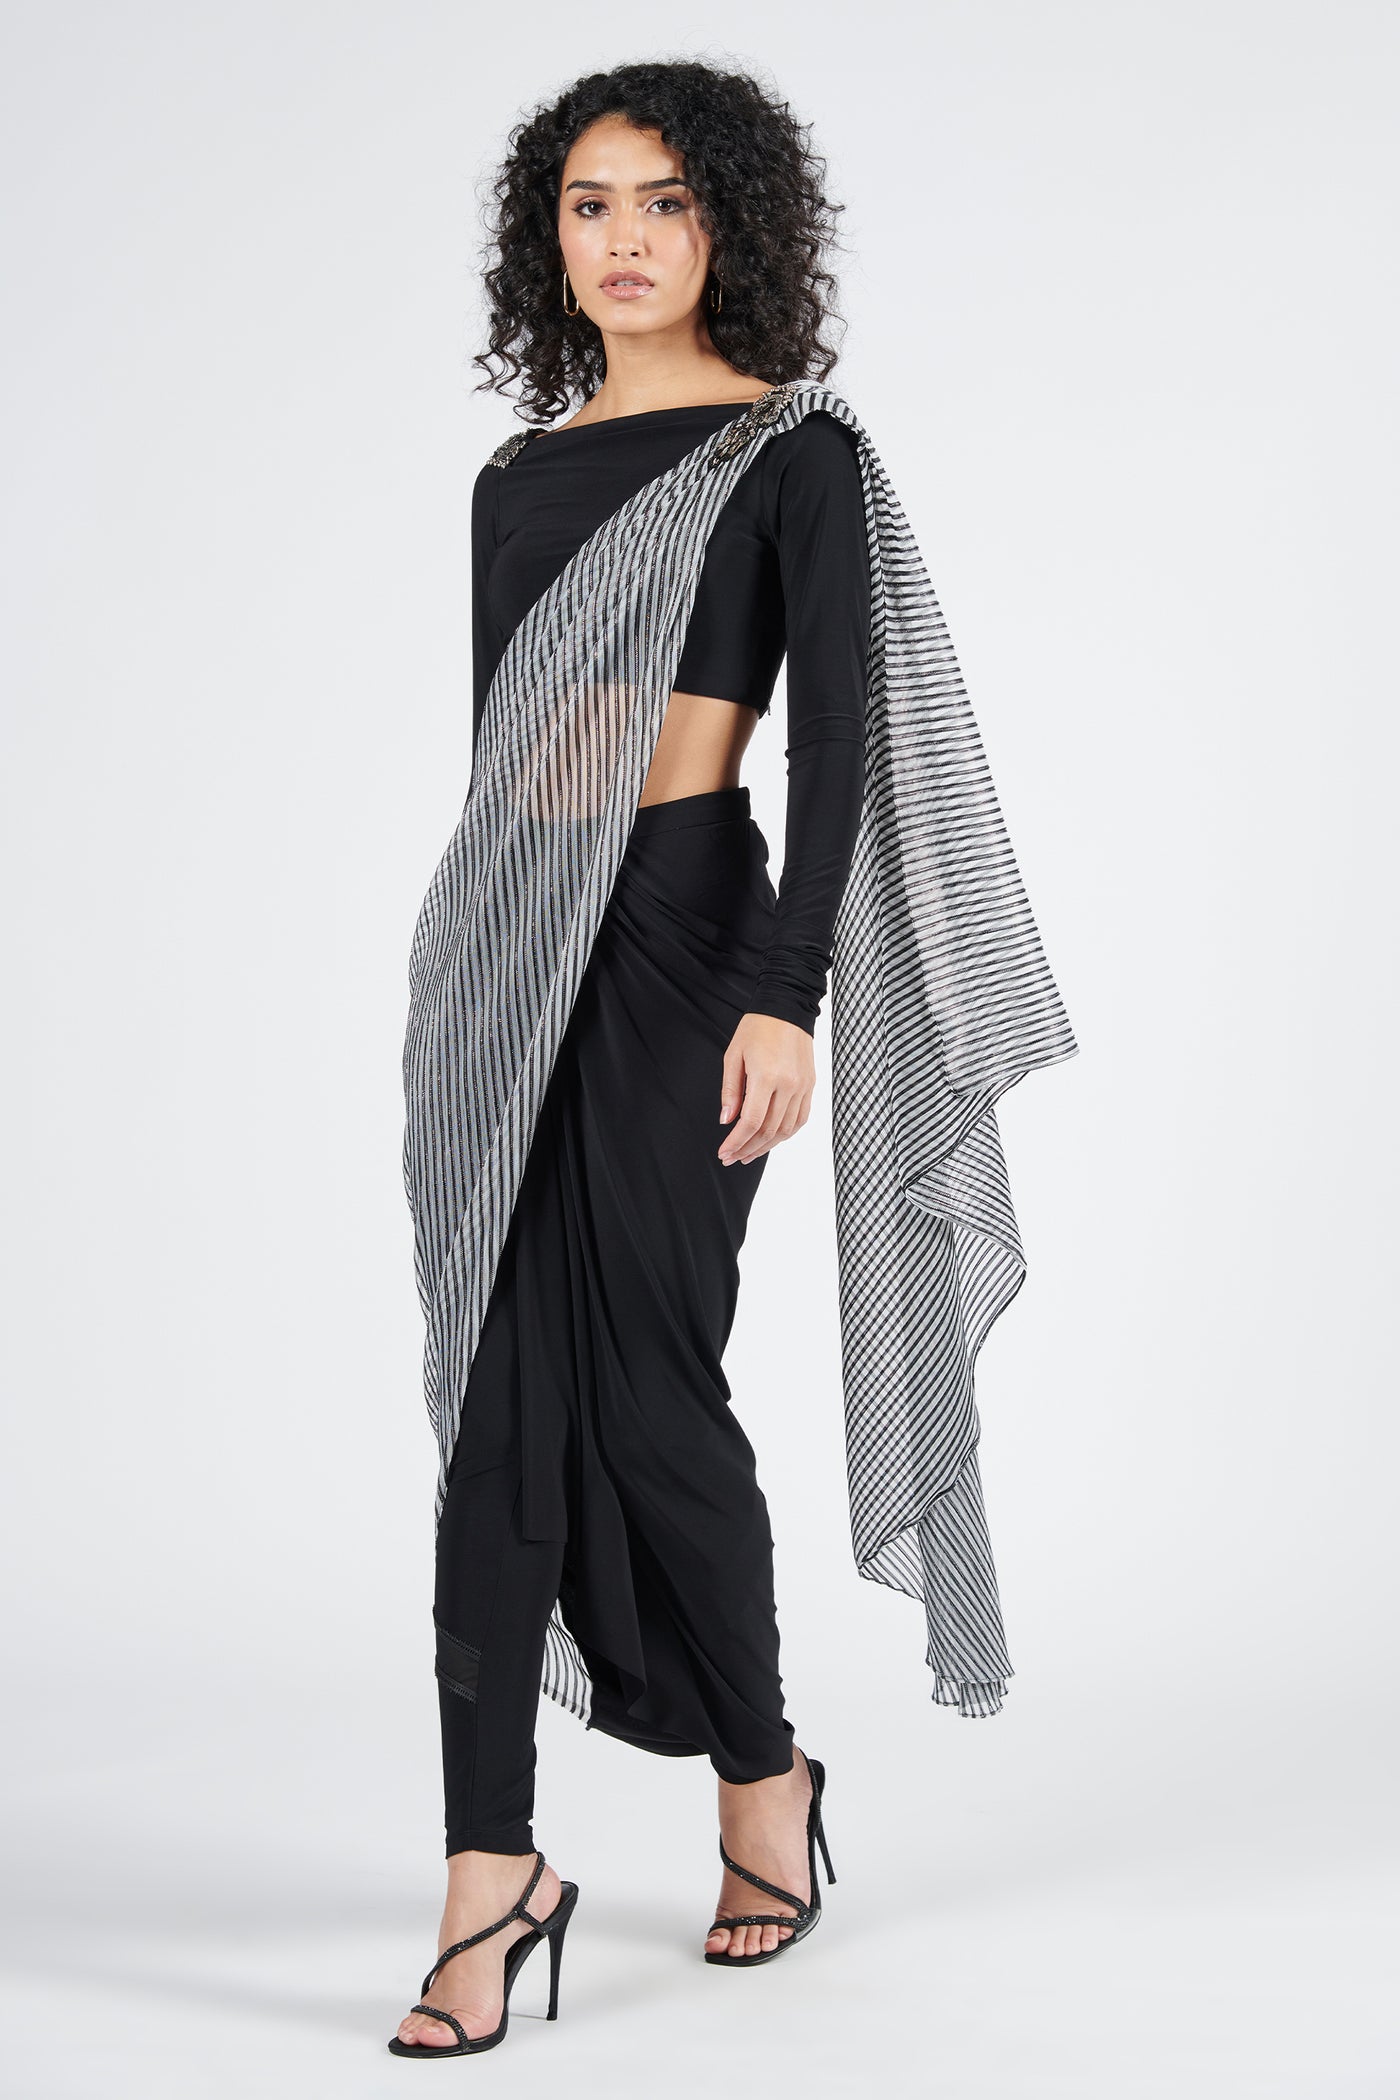 Shantanu & Nikhil Printed Drape Saree indian designer wear online shopping melange singapore